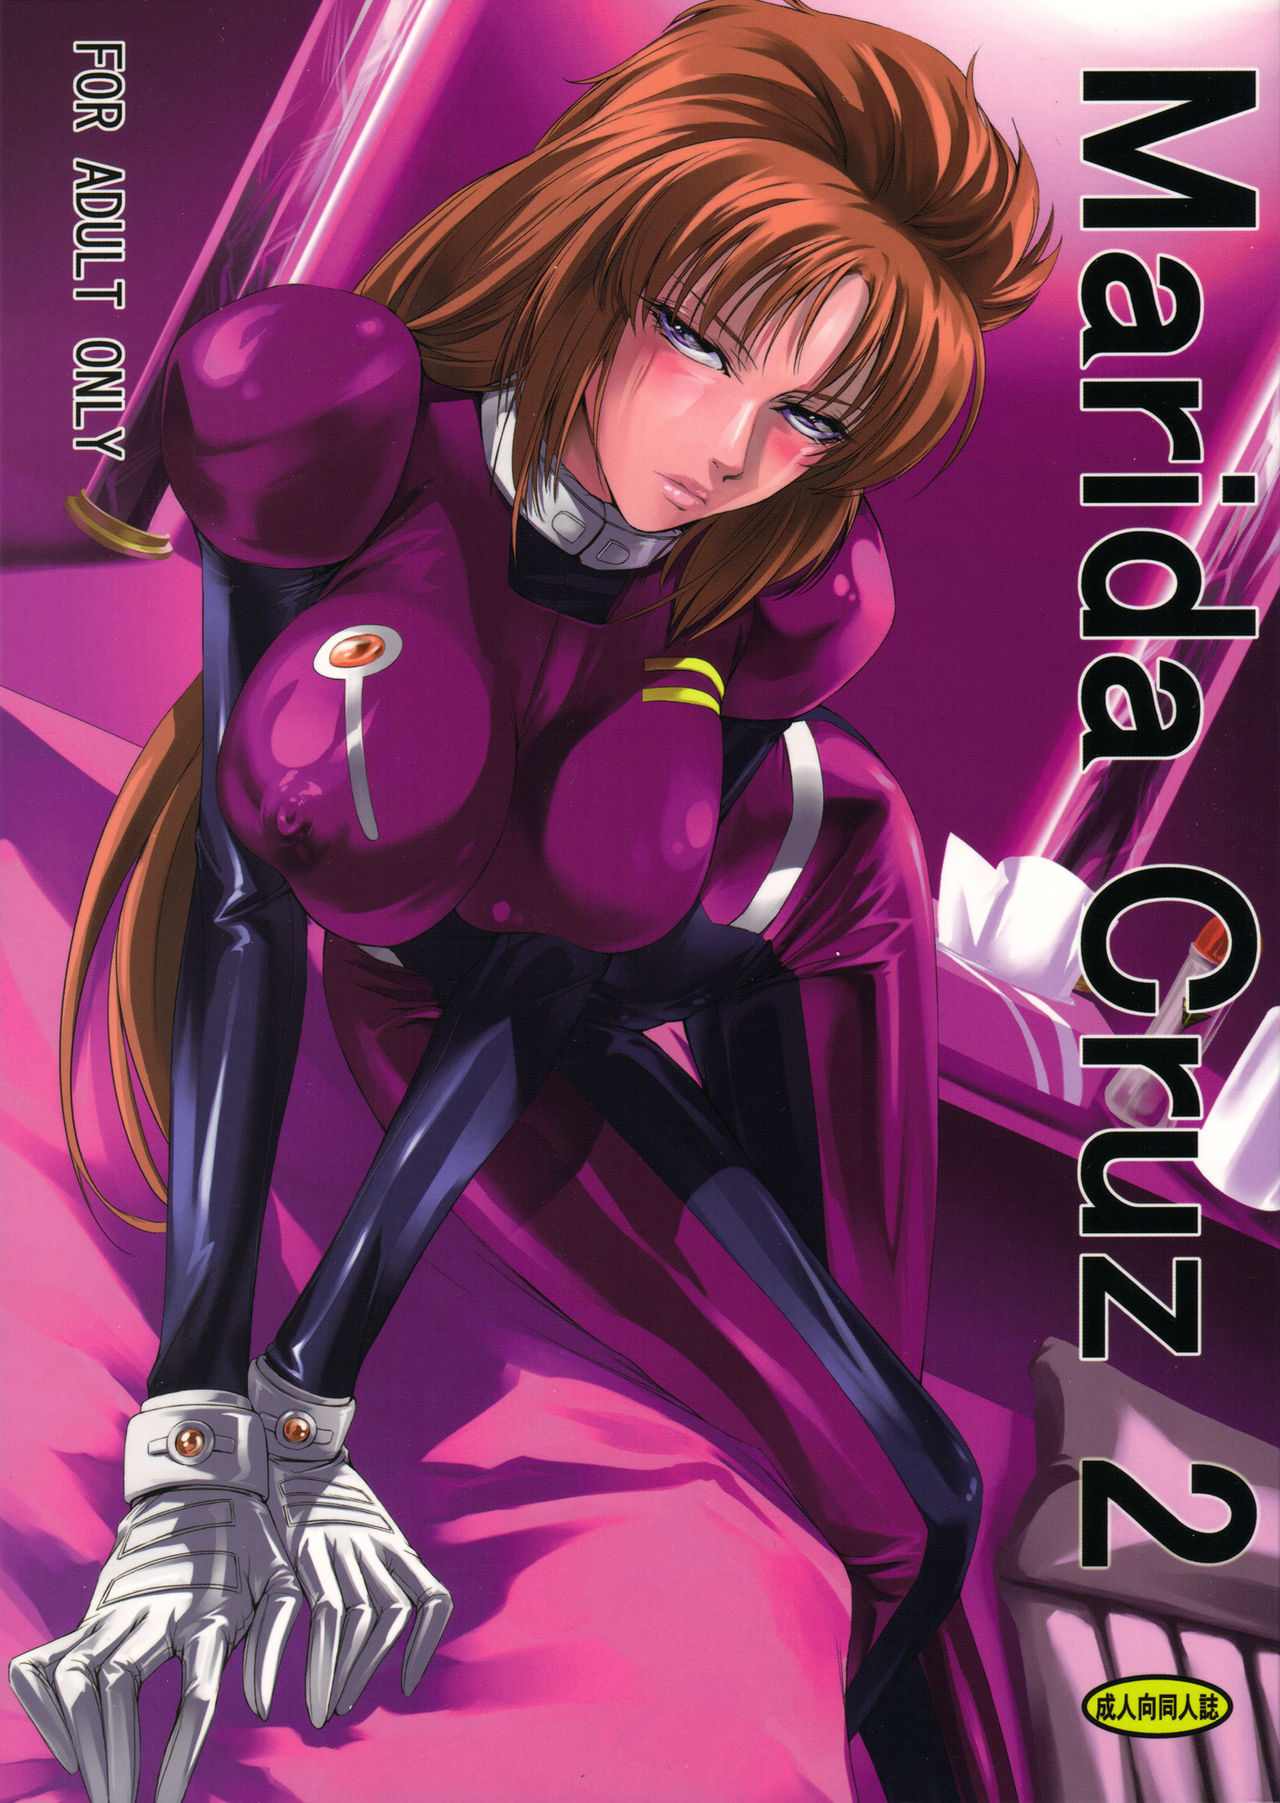 (C80) [DEX+ (Nakadera Akira)] Marida Cruz 2 (Gundam Unicorn) (C80) [DEX+ (中寺明良)] Marida Cruz 2 (ガンダムUC)